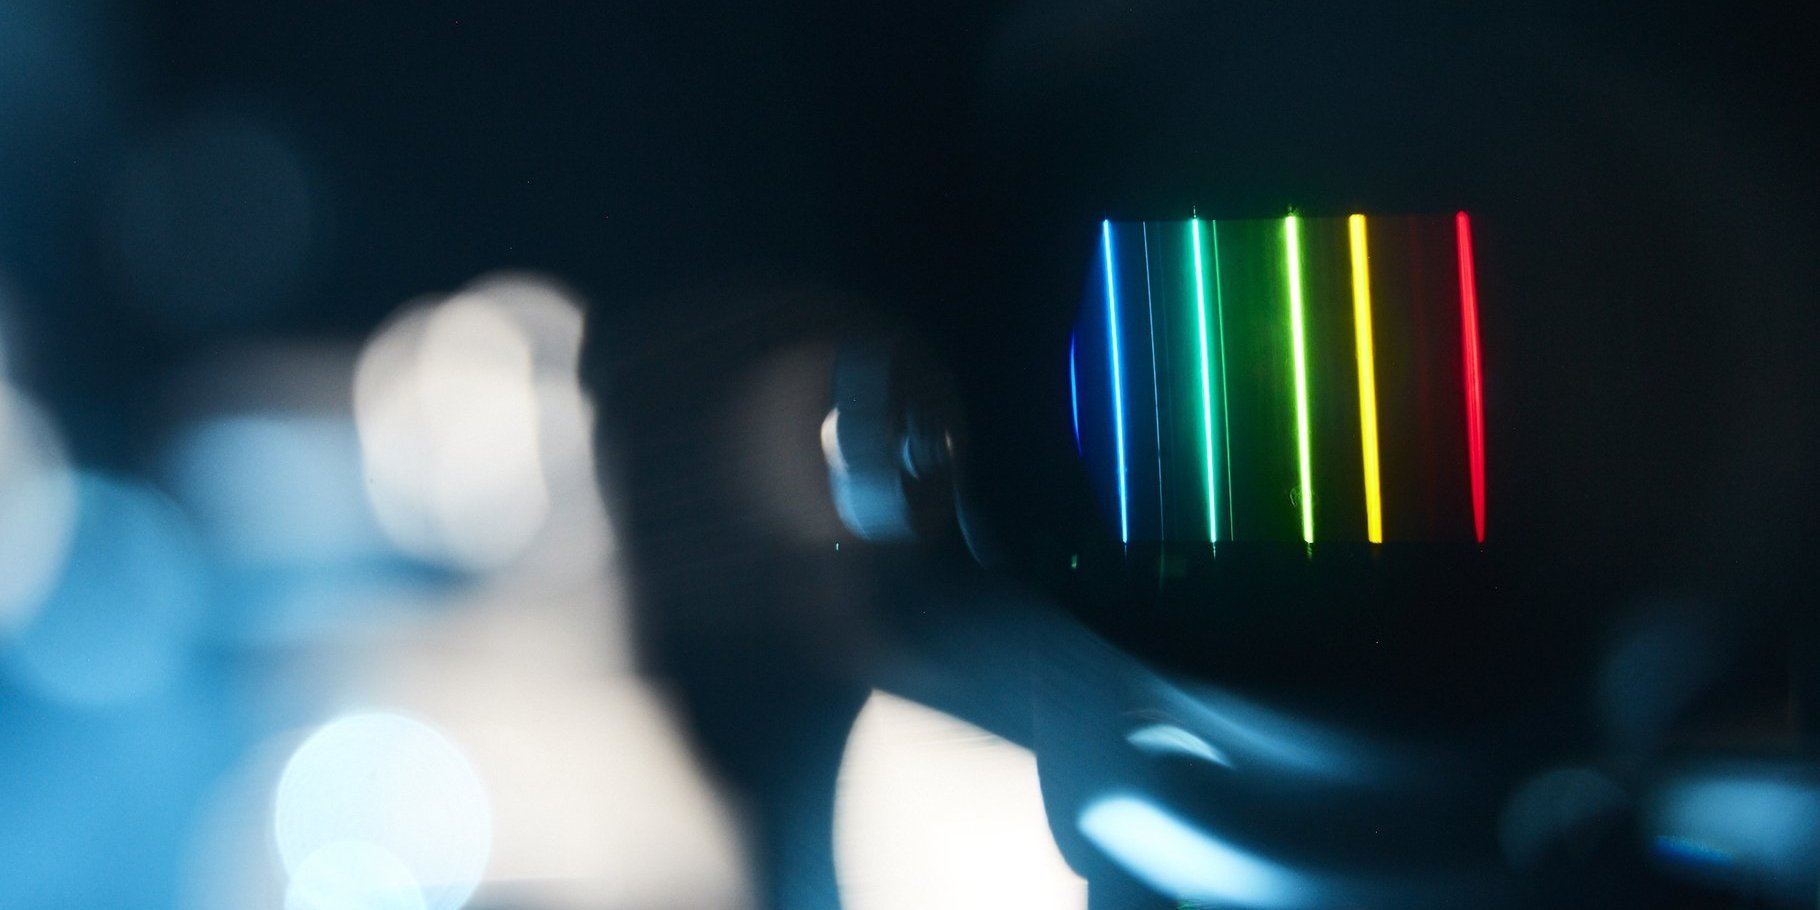 Im Hintergrund sind scharf Spektrallinien zu sehen, von tiefem Blau über Türkis und Hellgrün bis zu strahendem Gelb und kräftigem Rot. Die Geräte im Vordergrund sind aufgrund der Kameraeinstellungen nur sehr unscharf wahrzunehmen und nicht klar zu erkennen.